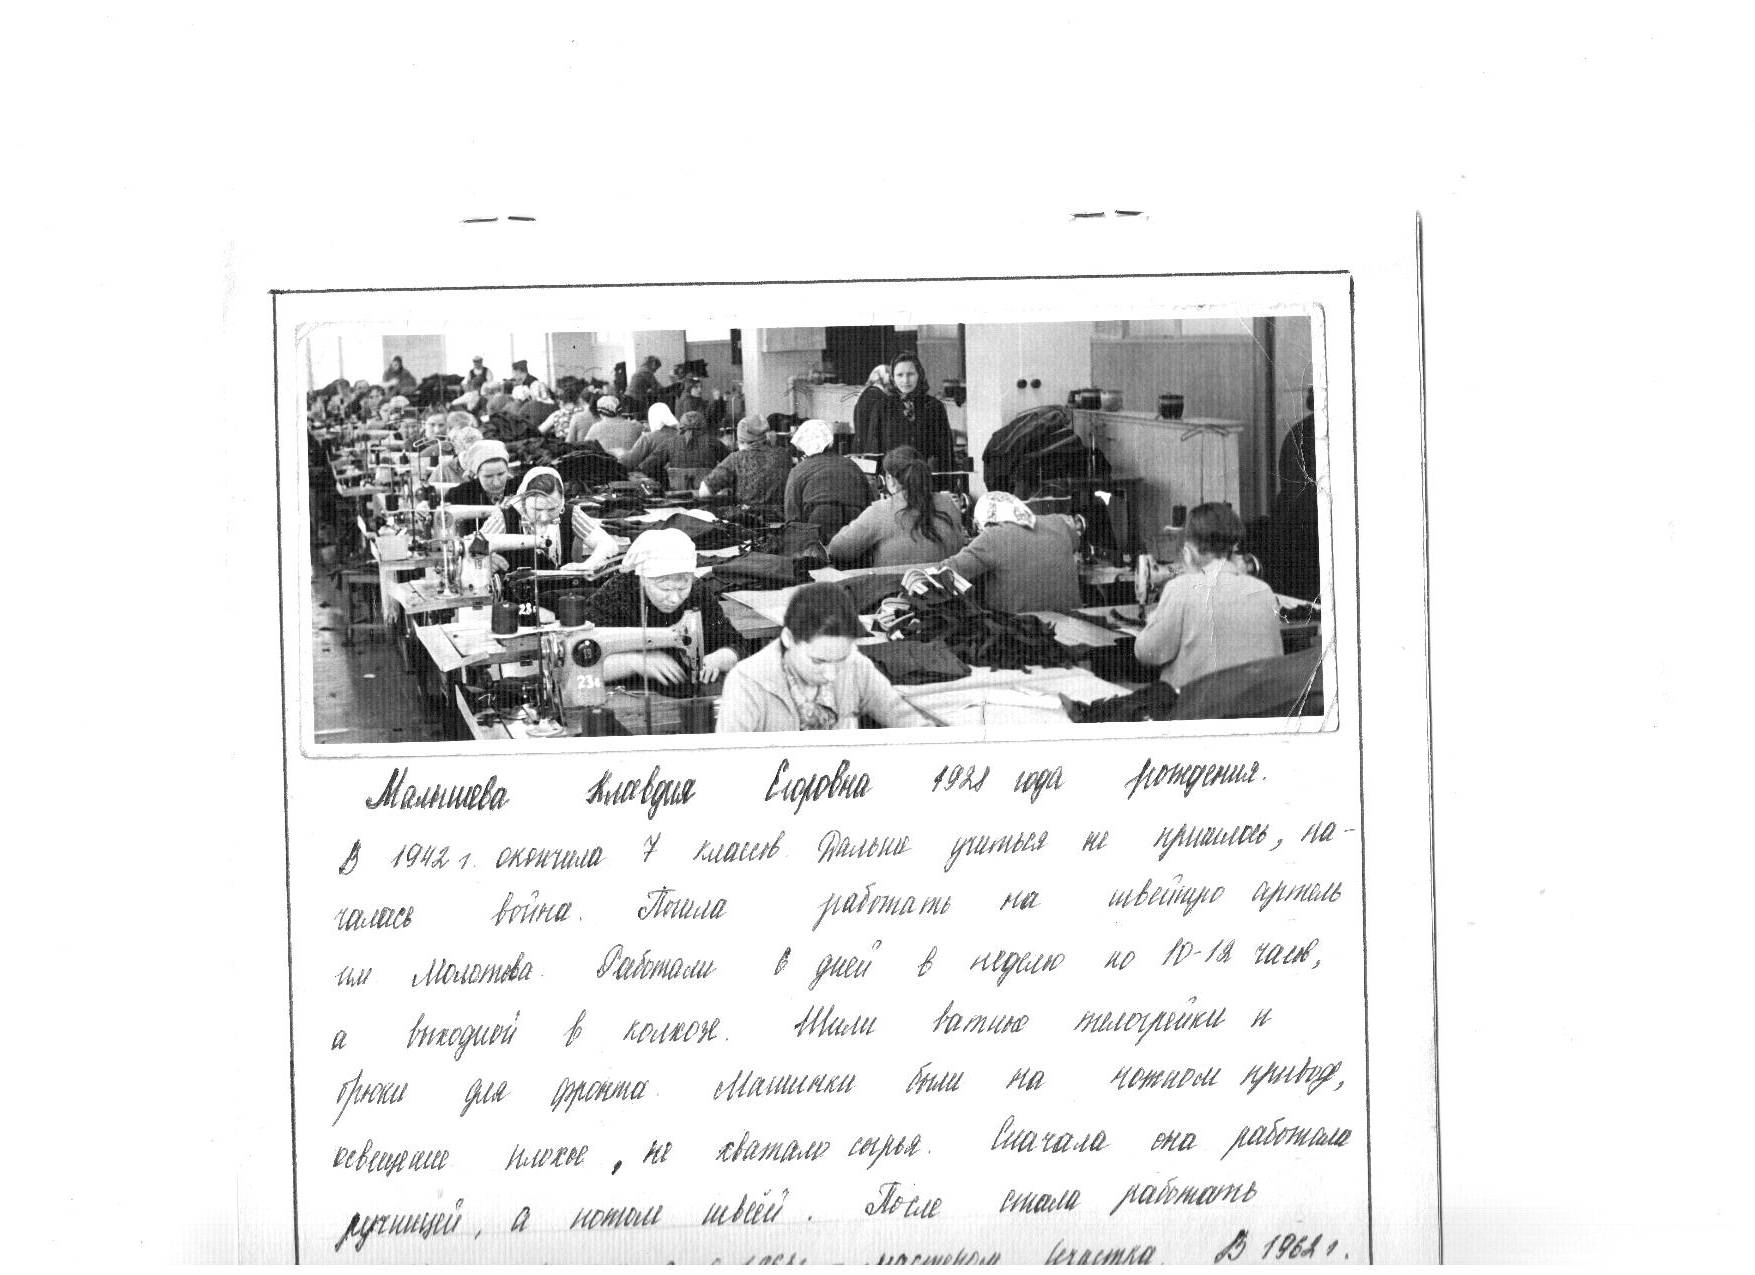 Исследовательская работа Страницы истории Тумской швейной фабрики